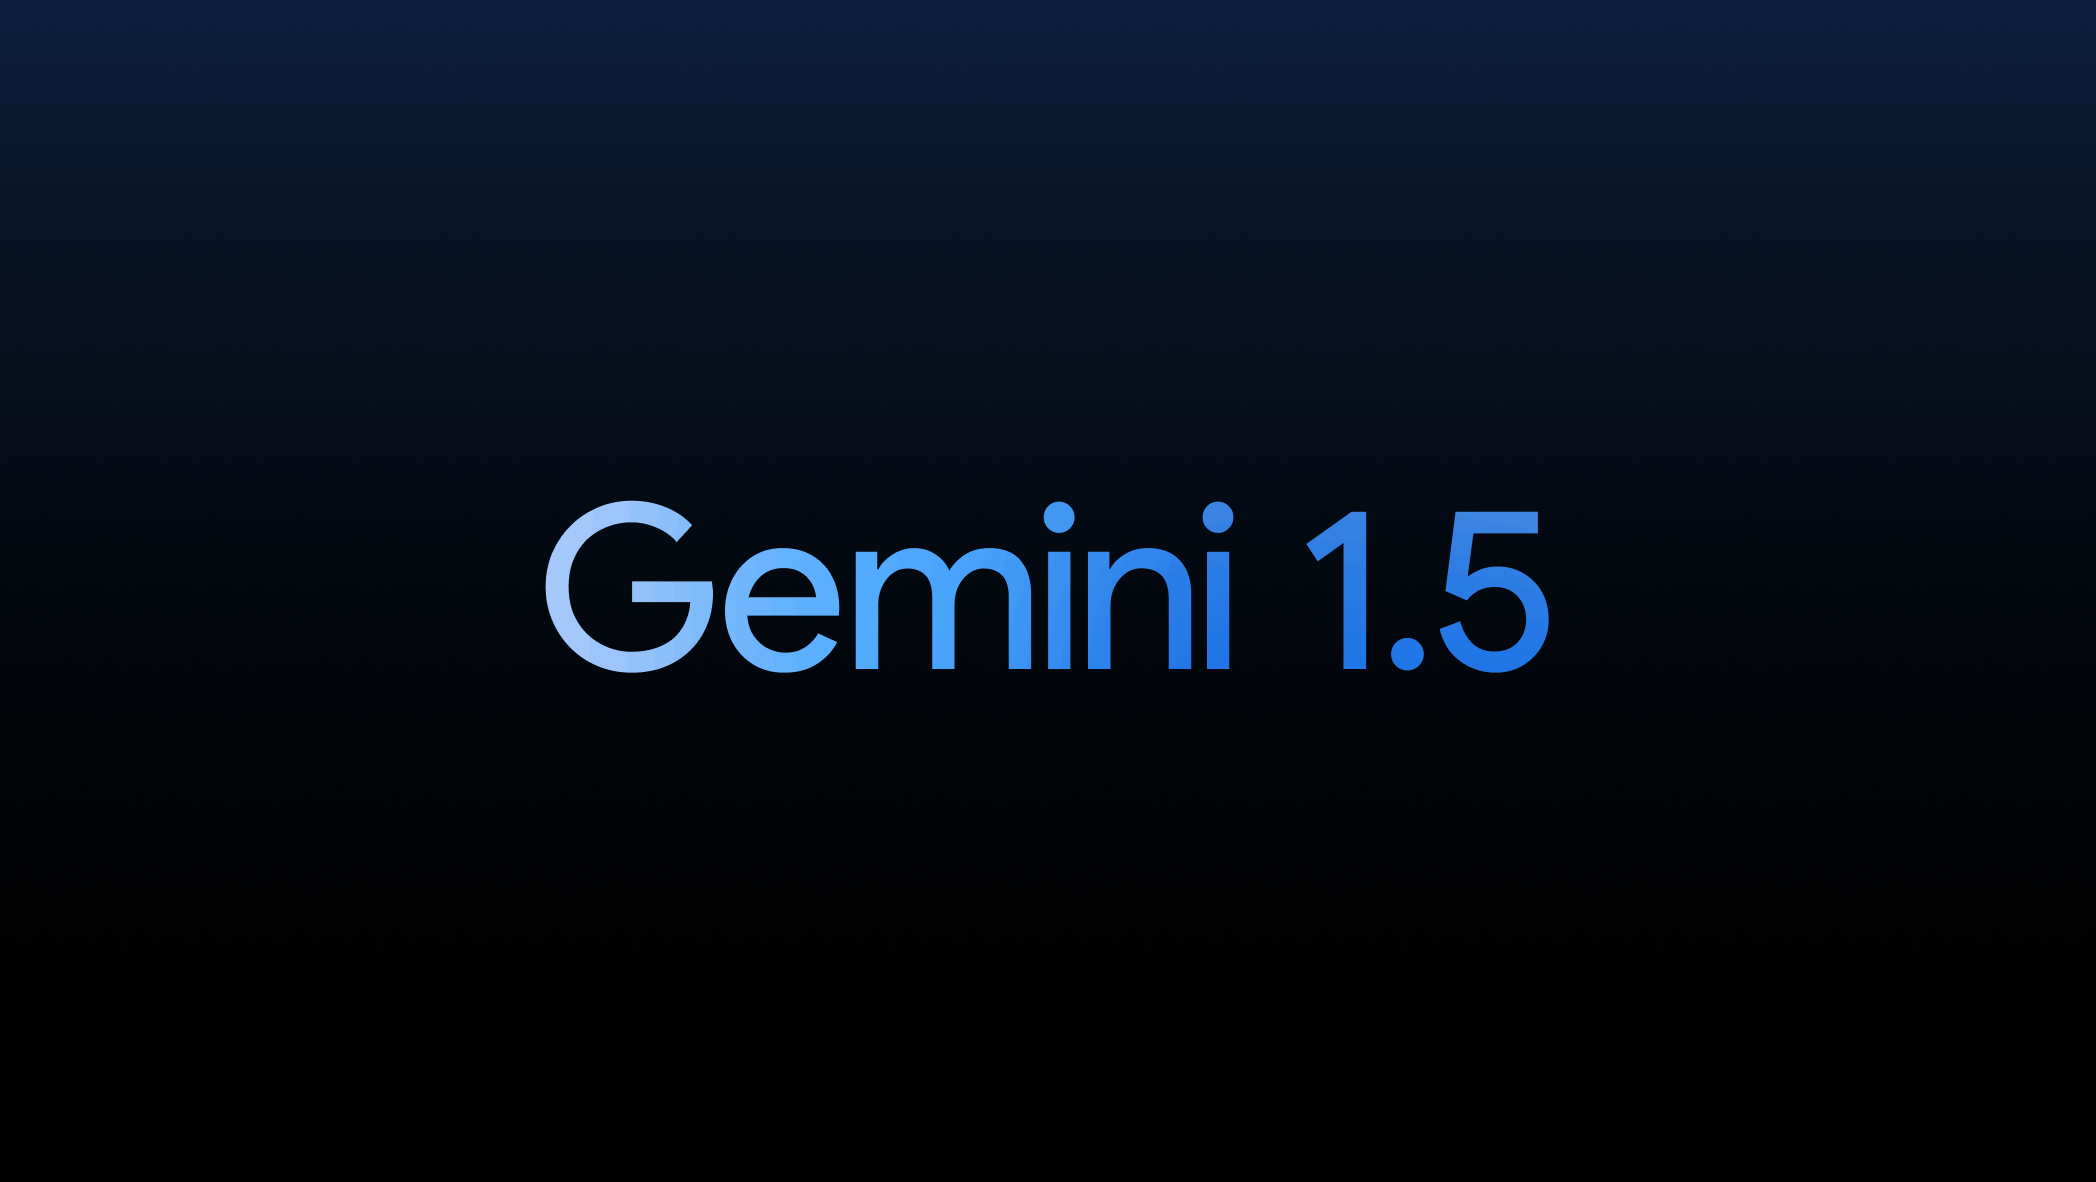 Gemini 1.5 - ما الجديد